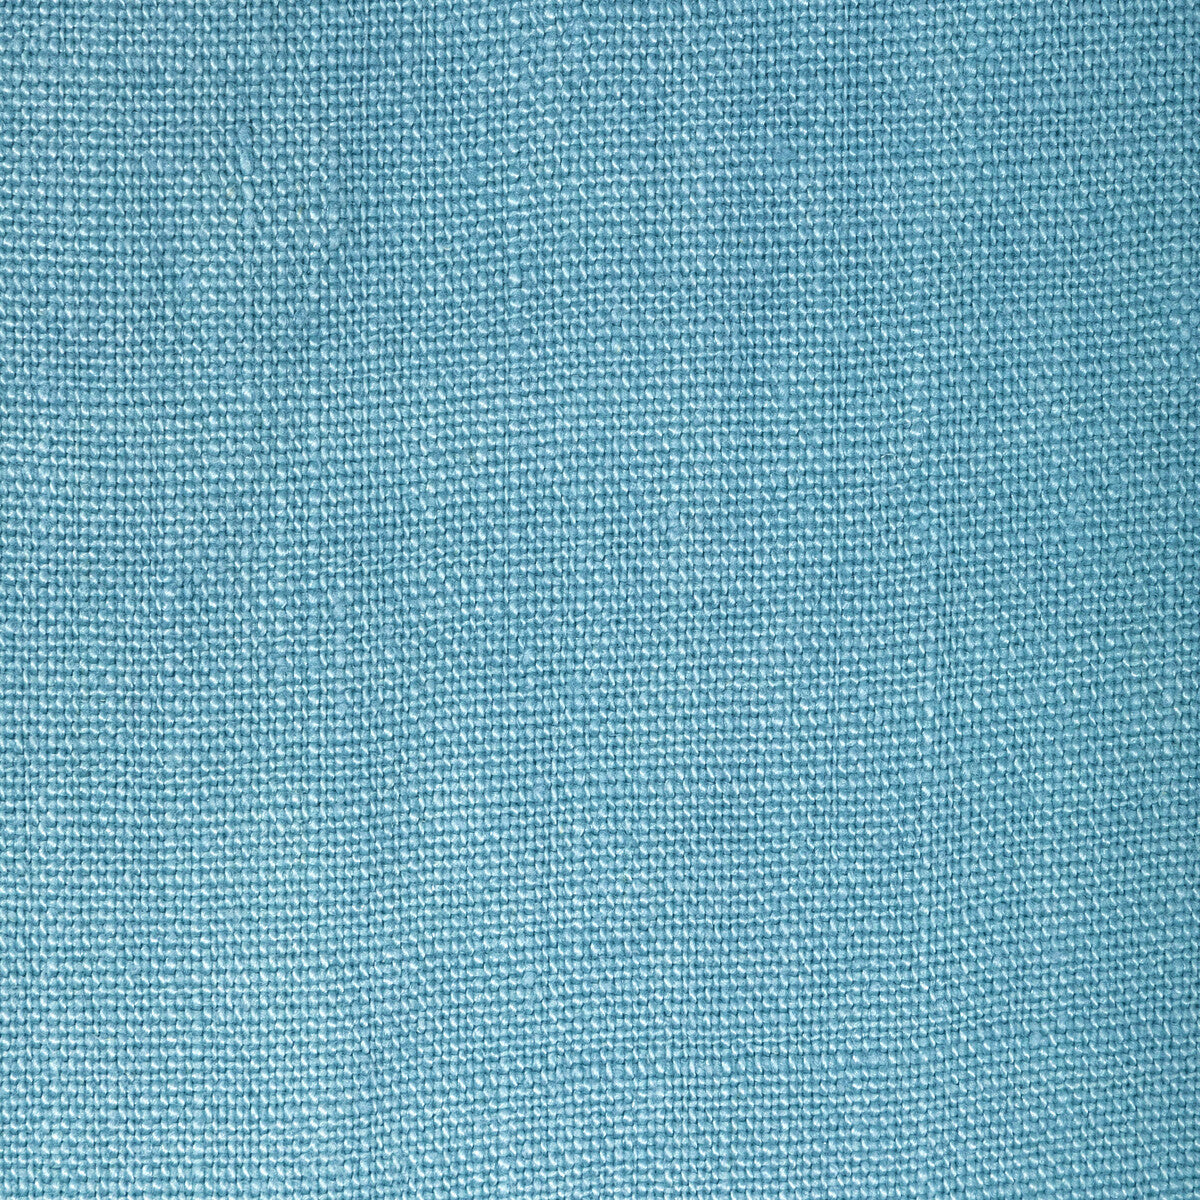 Kravet Basics fabric in 36332-15 color - pattern 36332.15.0 - by Kravet Basics